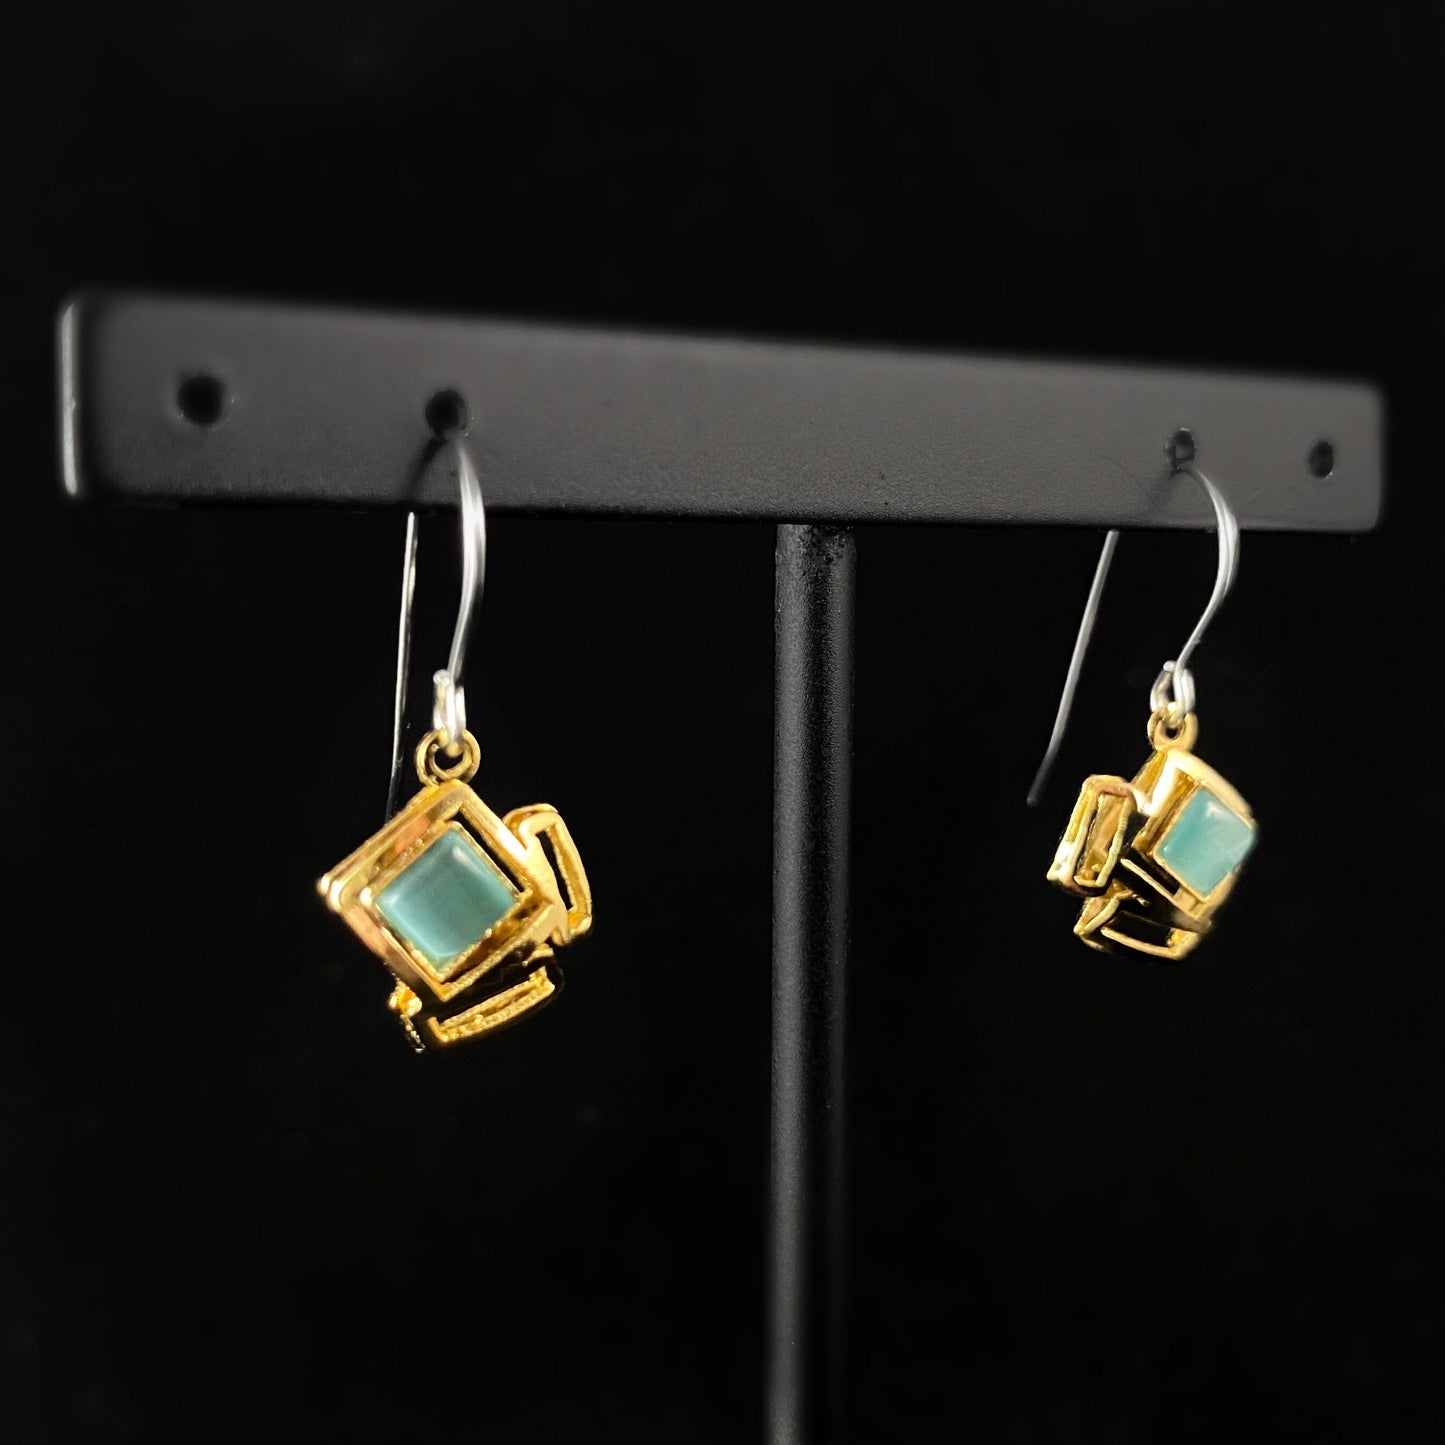 Lightweight Handmade Geometric Aluminum Earrings, Small Green/Gold Cubes